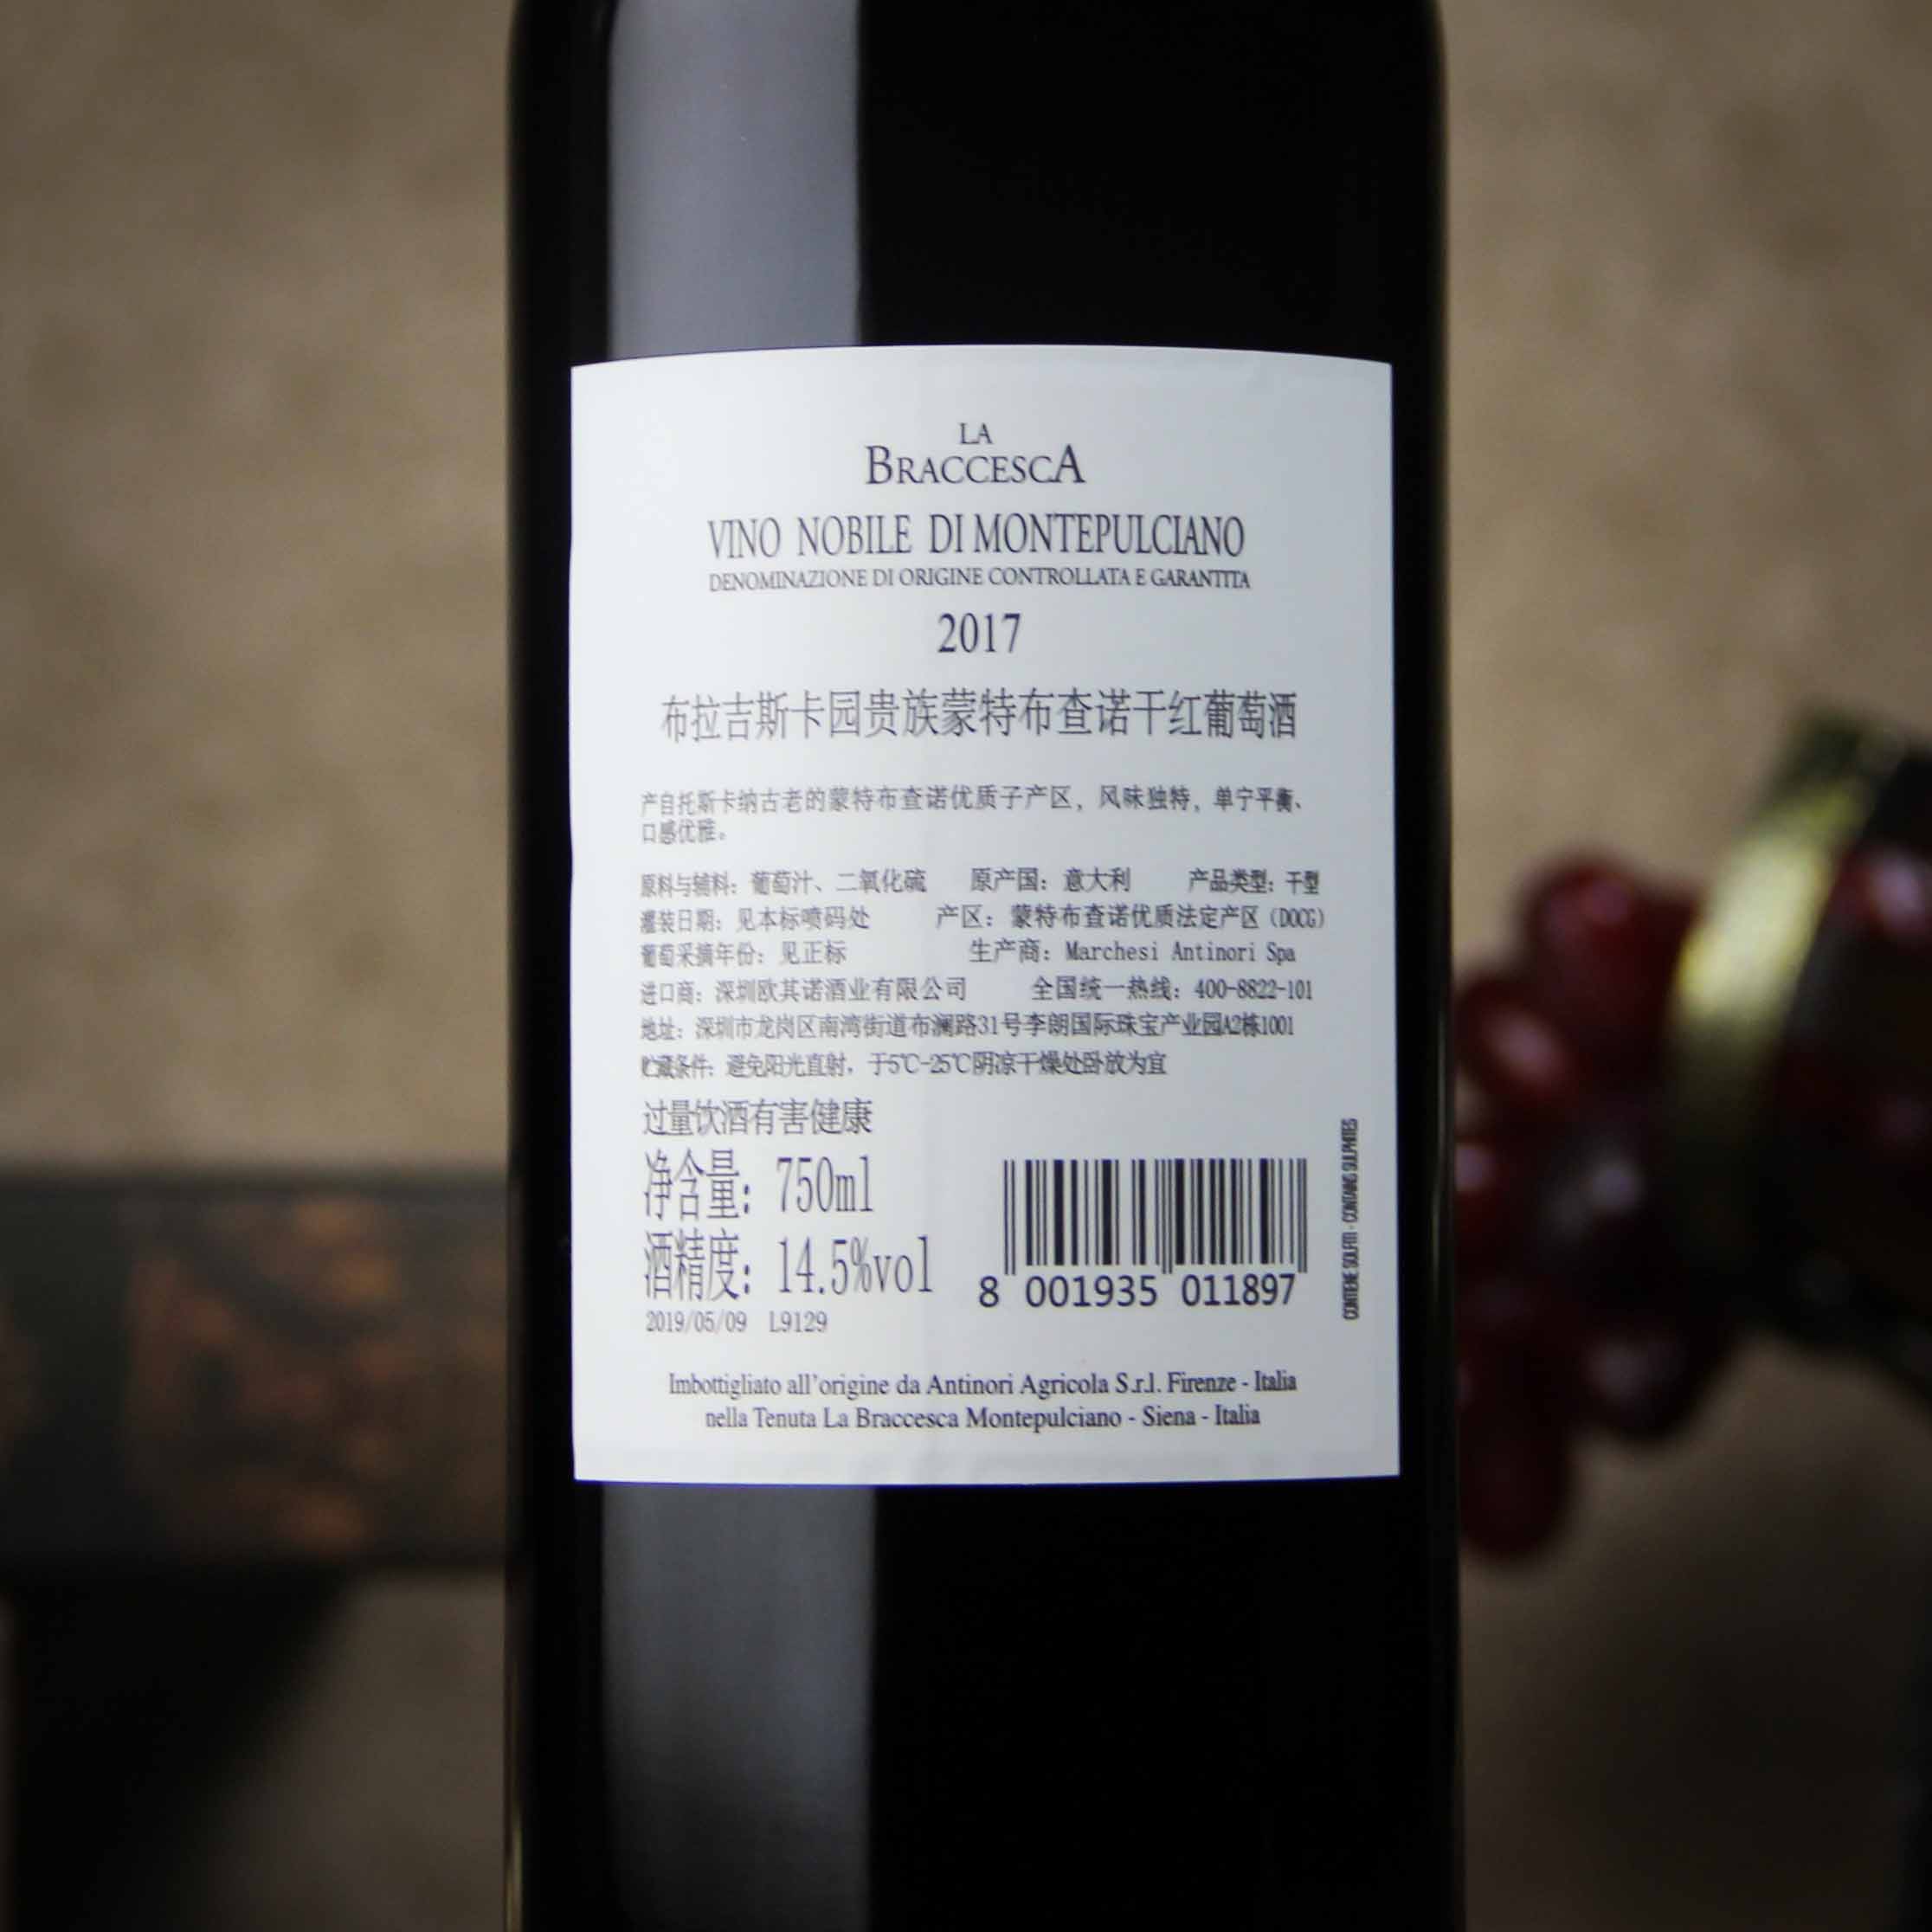 意大利布拉吉斯卡园 贵族蒙特布查诺干红葡萄酒